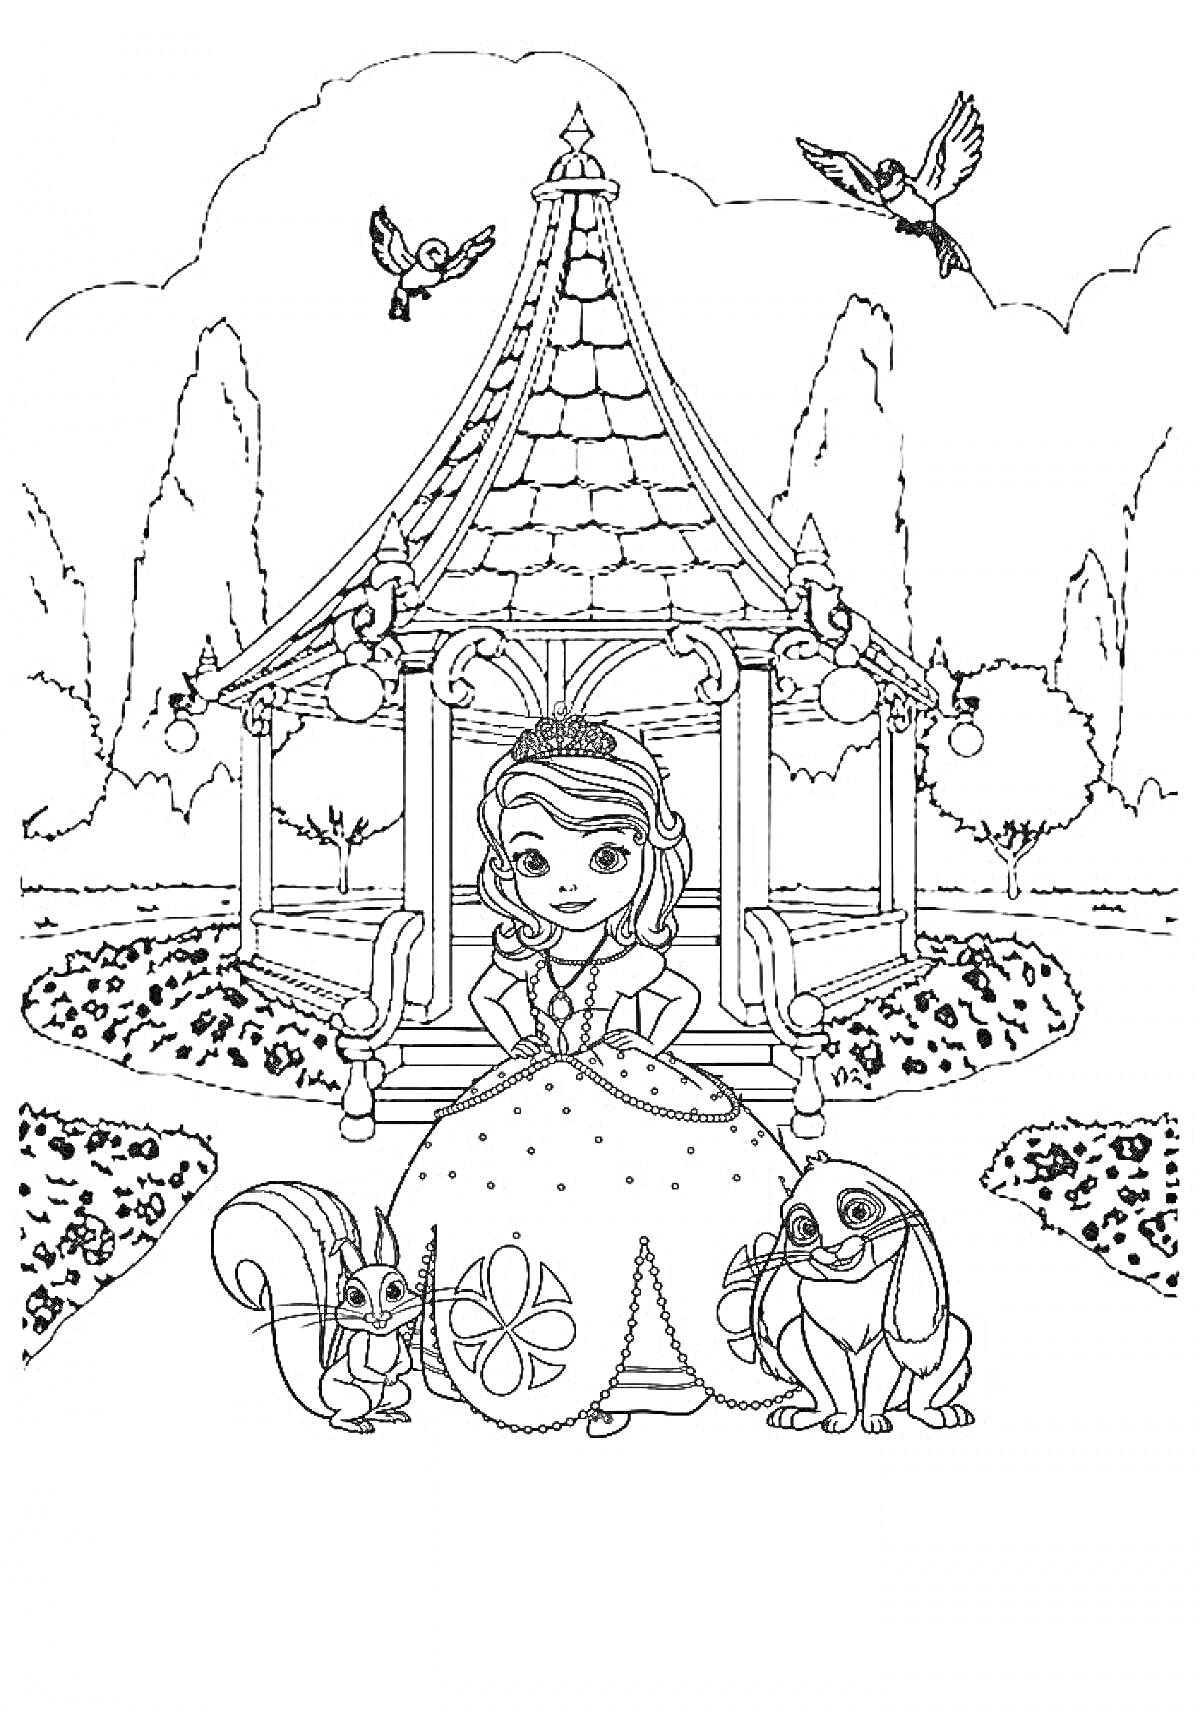 Принцесса с животными на фоне беседки и деревьев, двое птиц в полете